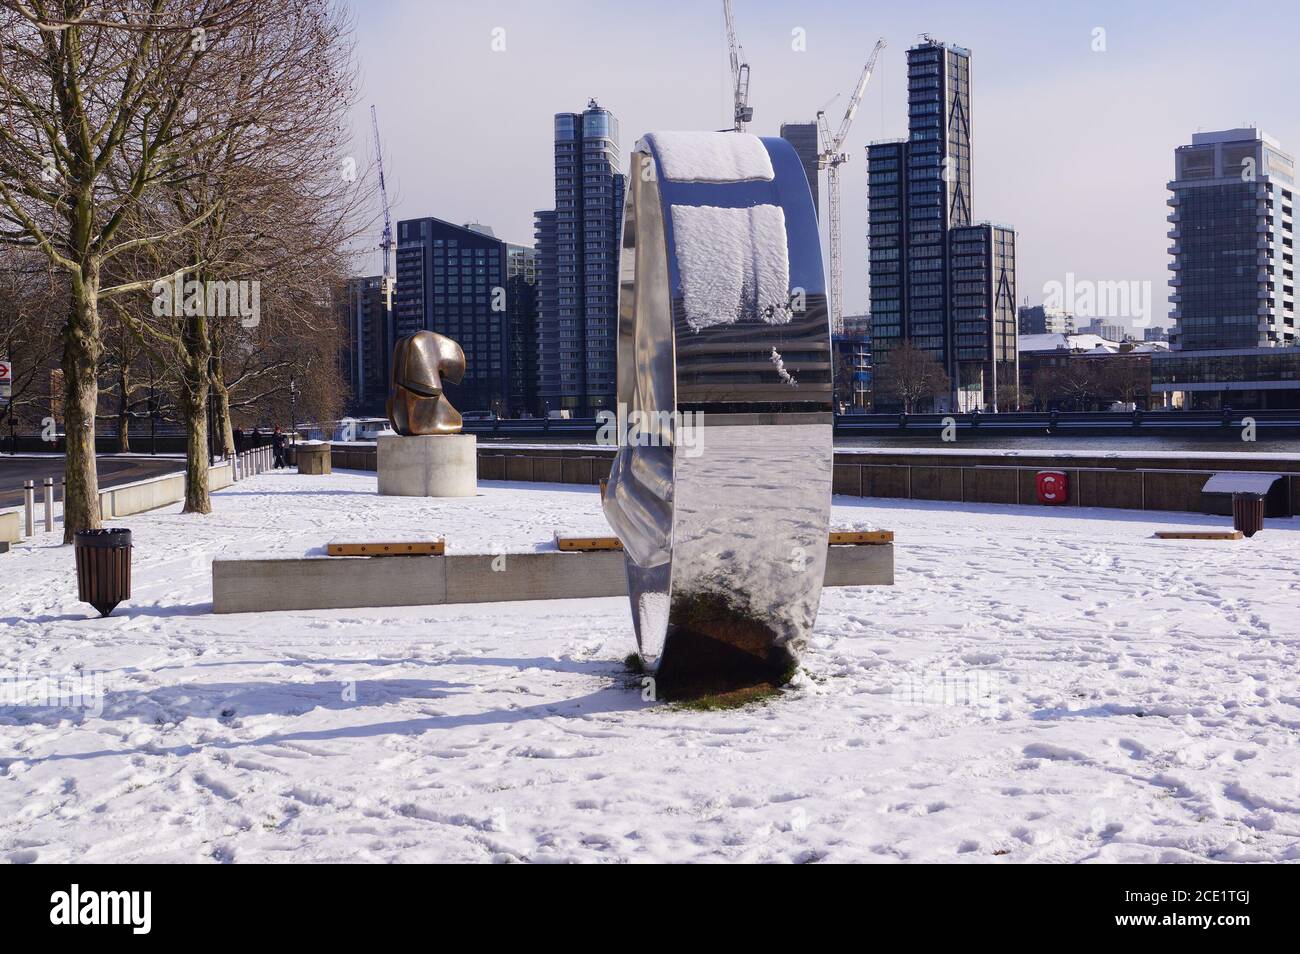 Londra, Regno Unito: Una vista del Riverside Walk Gardens a Millbank dopo una nevicata Foto Stock